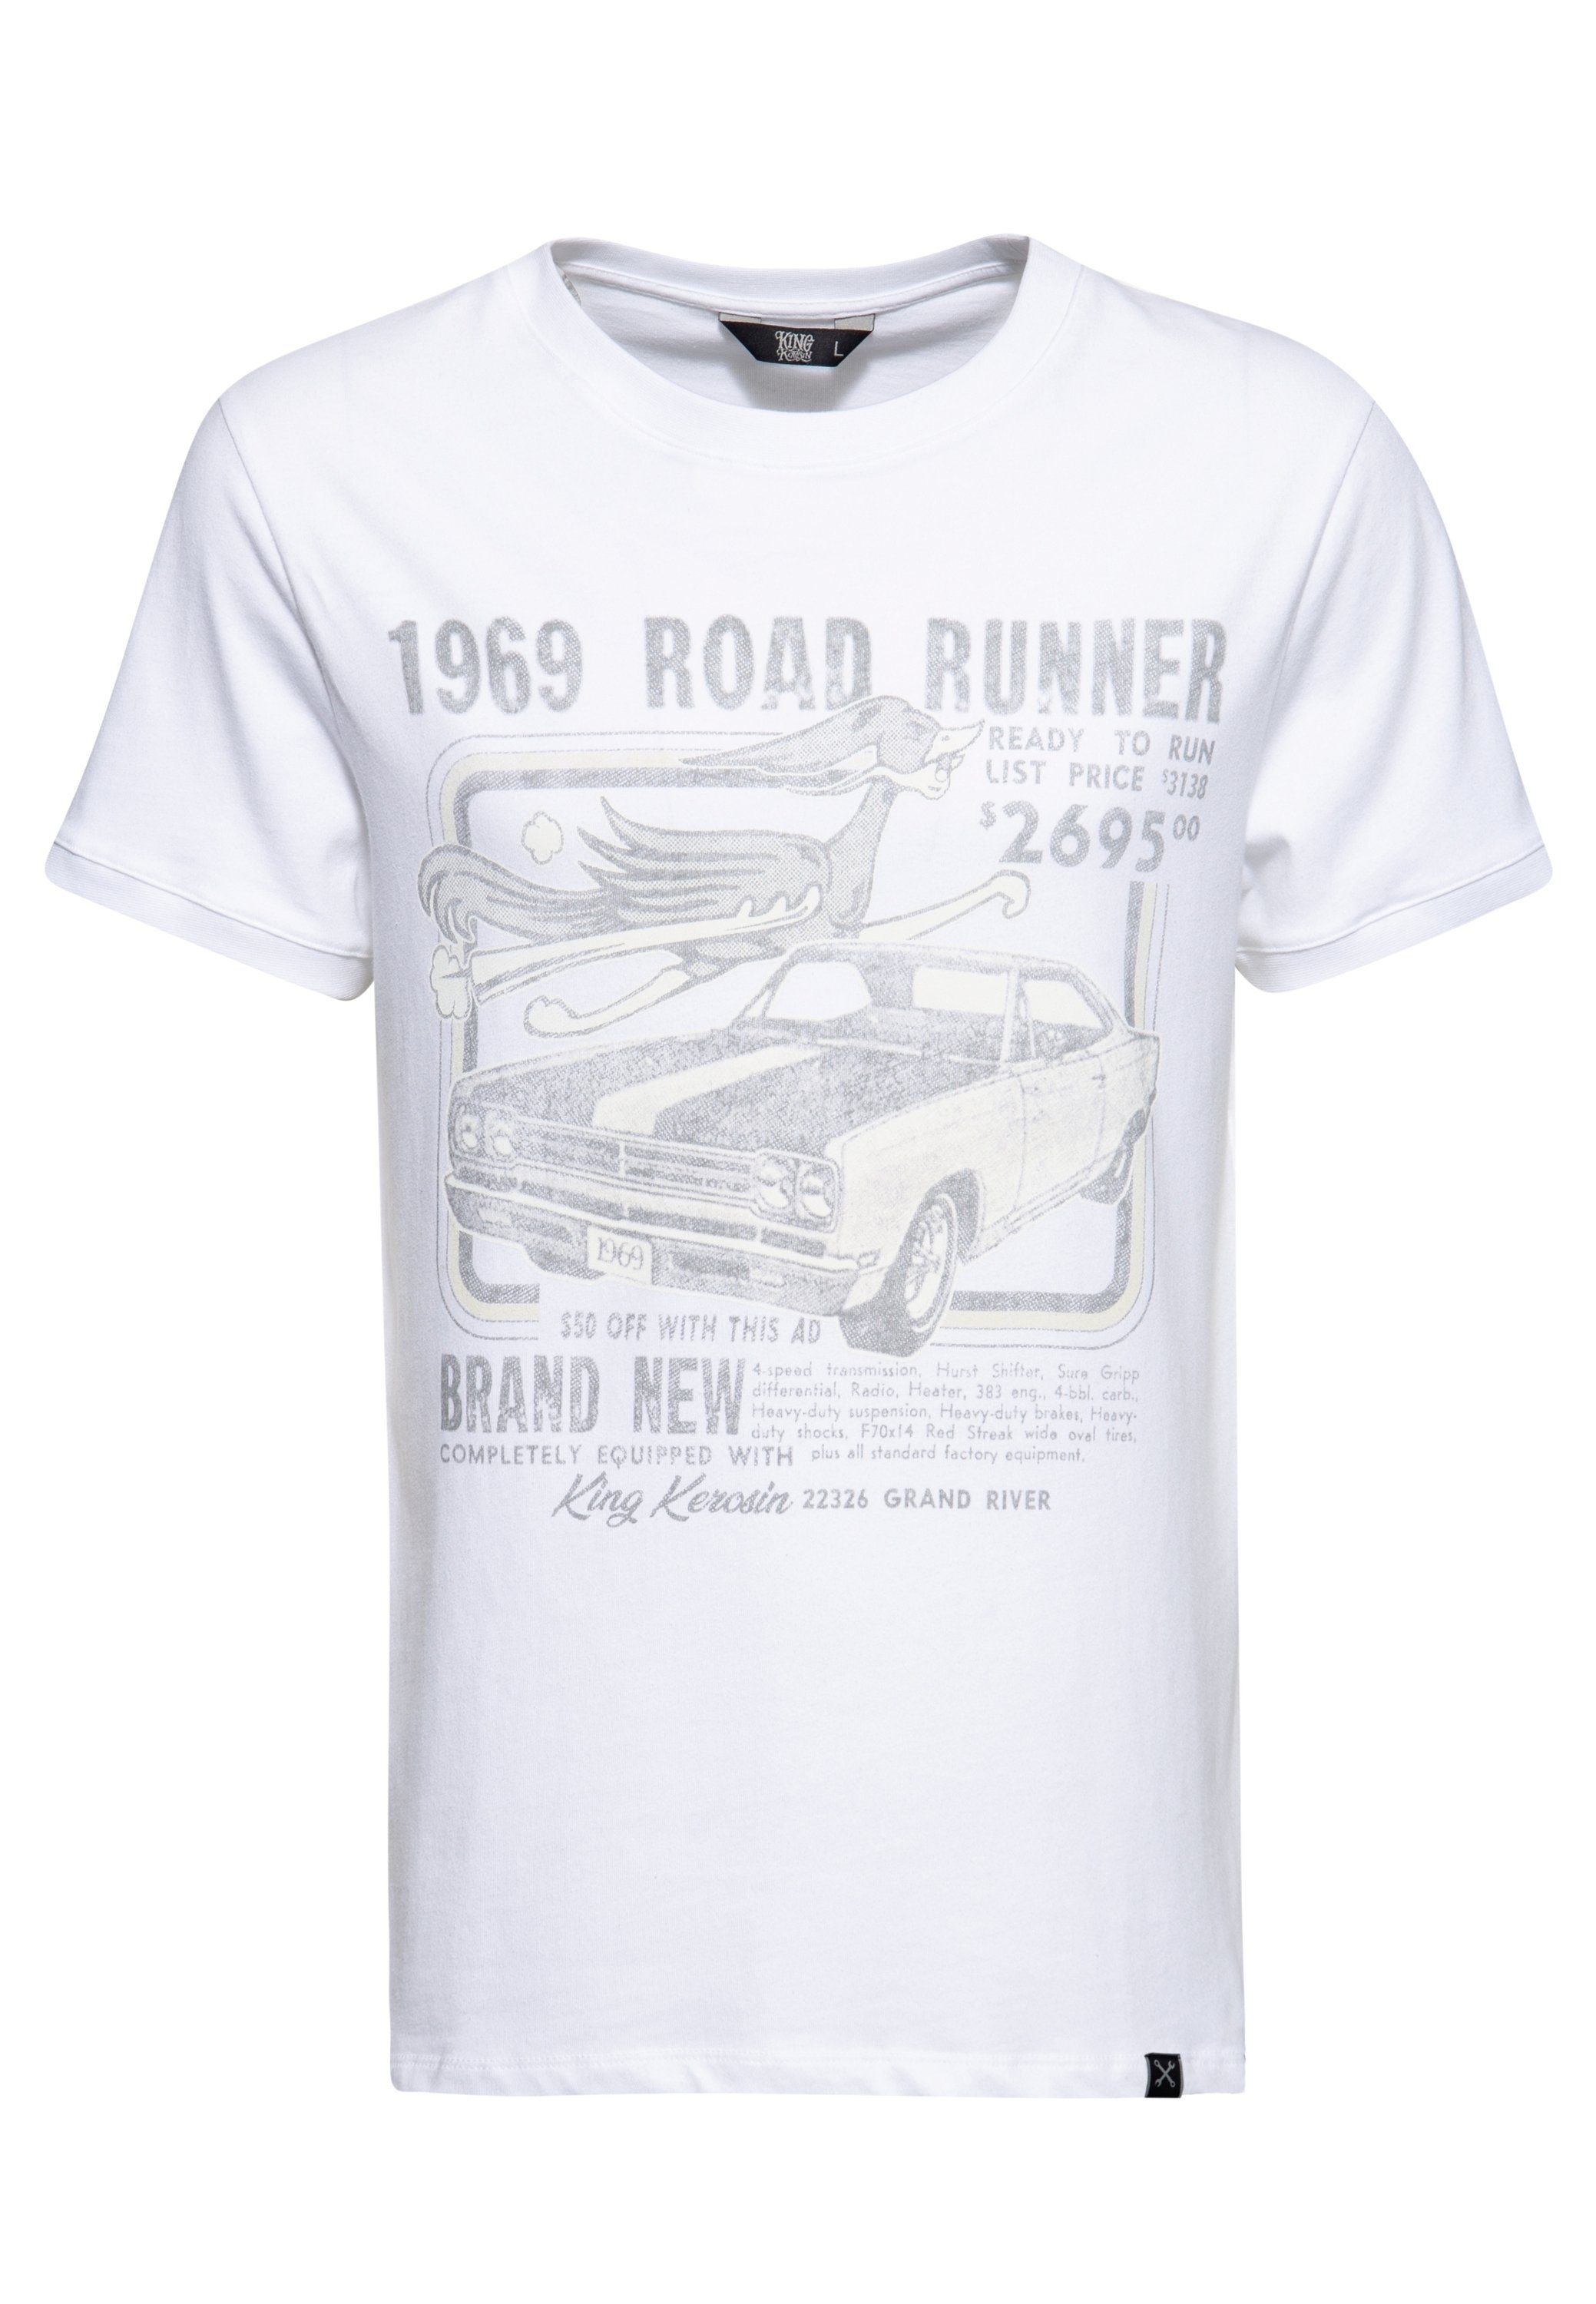 Frontprint Road 1969 KingKerosin T-Shirt Runner